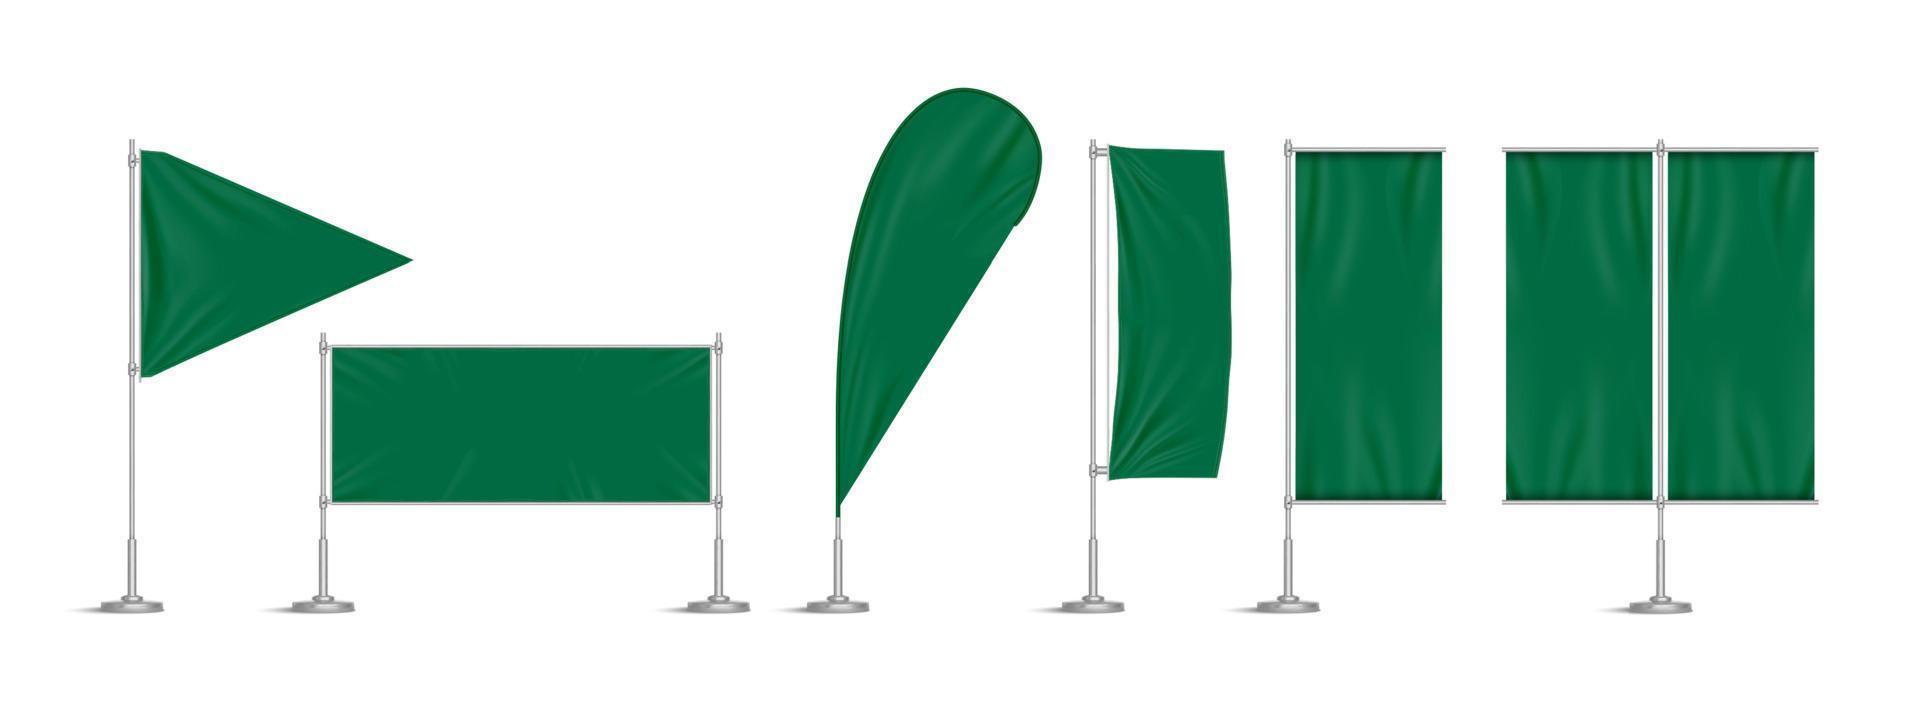 grön vinyl flaggor och uppsättning banderoller på Pol vektor